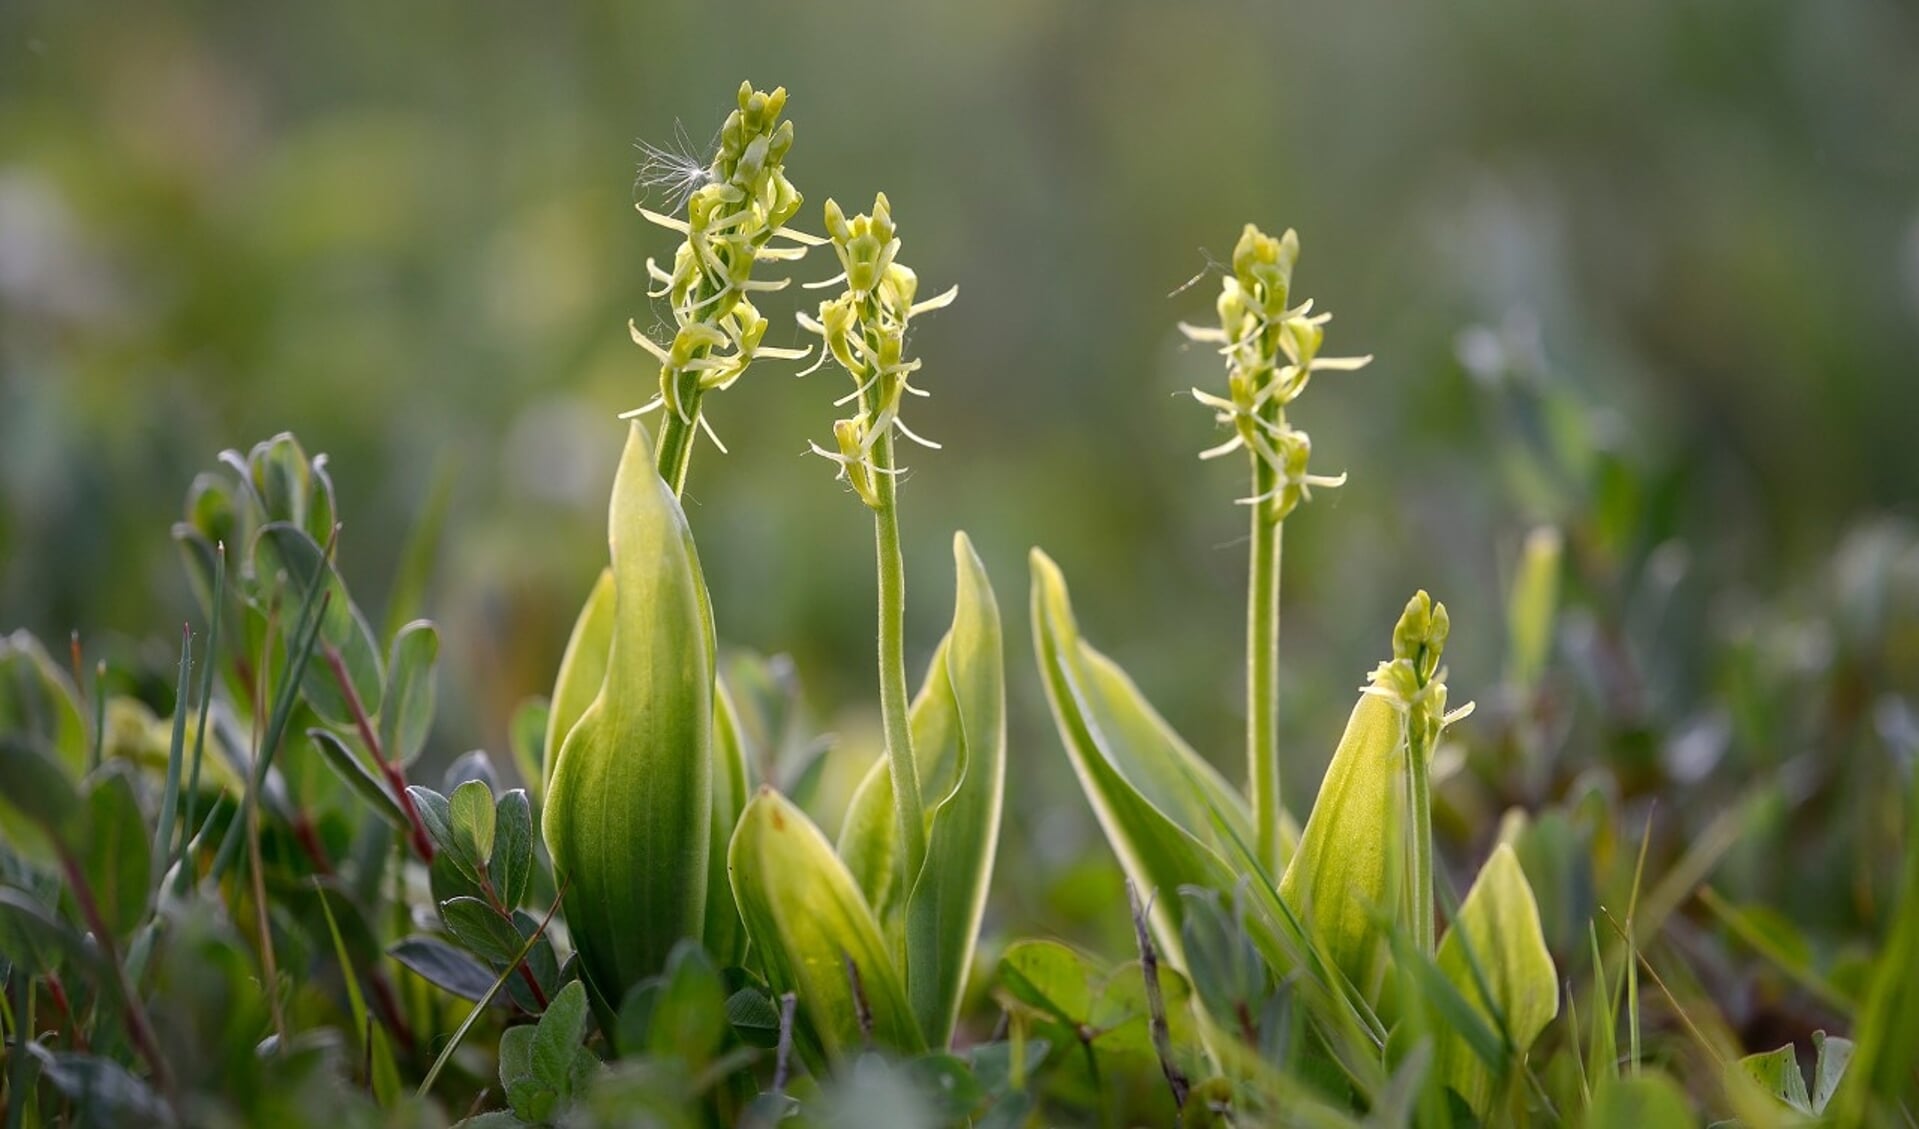 Groengele bloemen van bloeiende groenknolorchis (Liparis loeselii) in primaire duinvallei op het Kennemerstrand bij IJmuiden. 